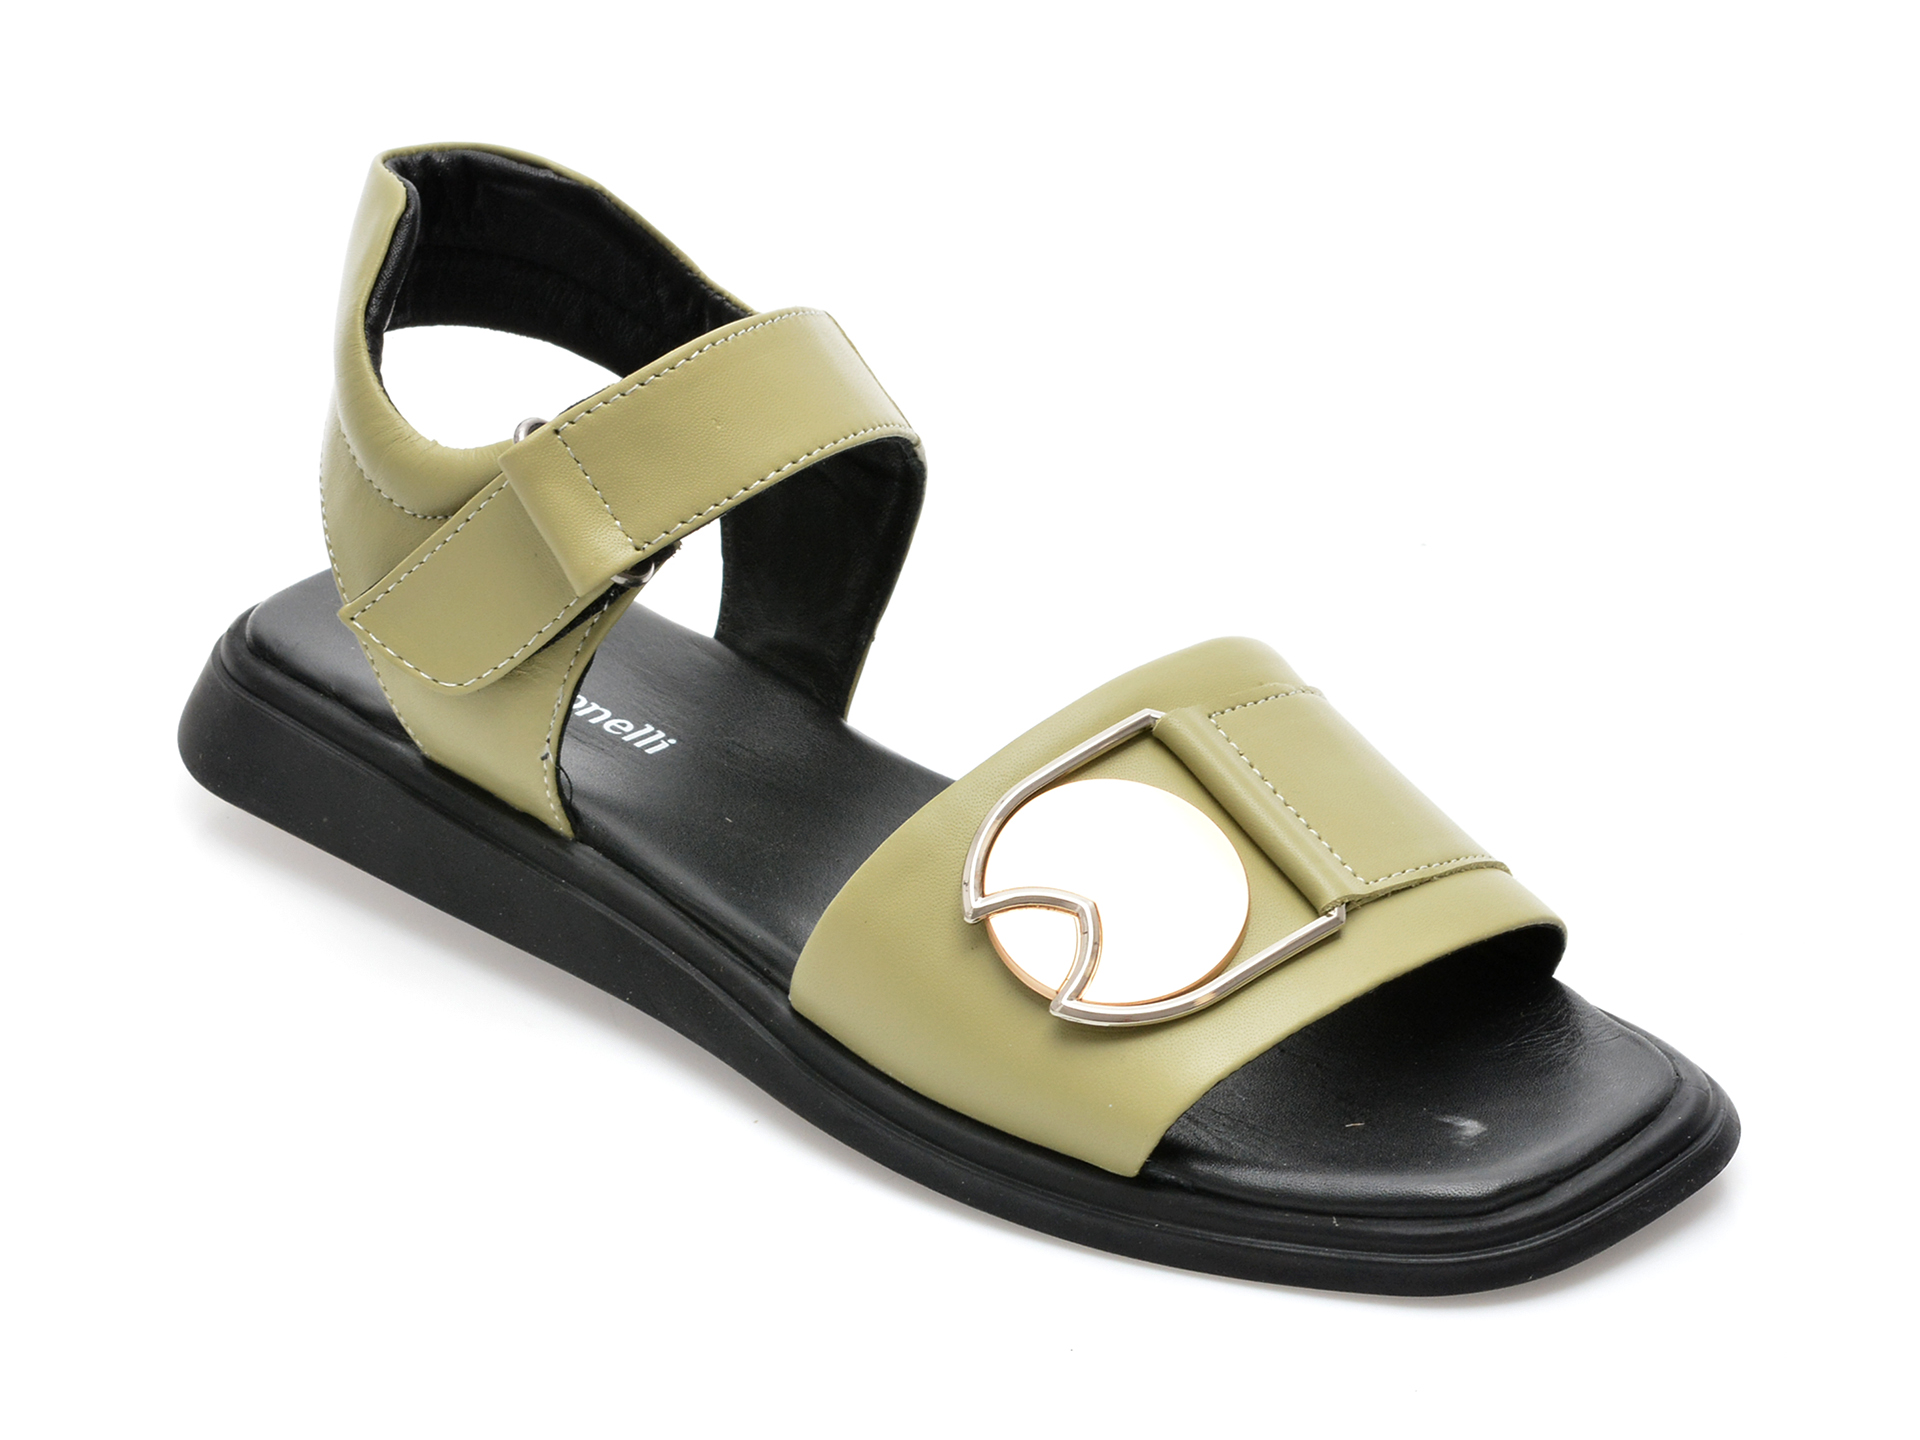 Sandale FABIO MONELLI verzi, 678, din piele naturala /femei/sandale